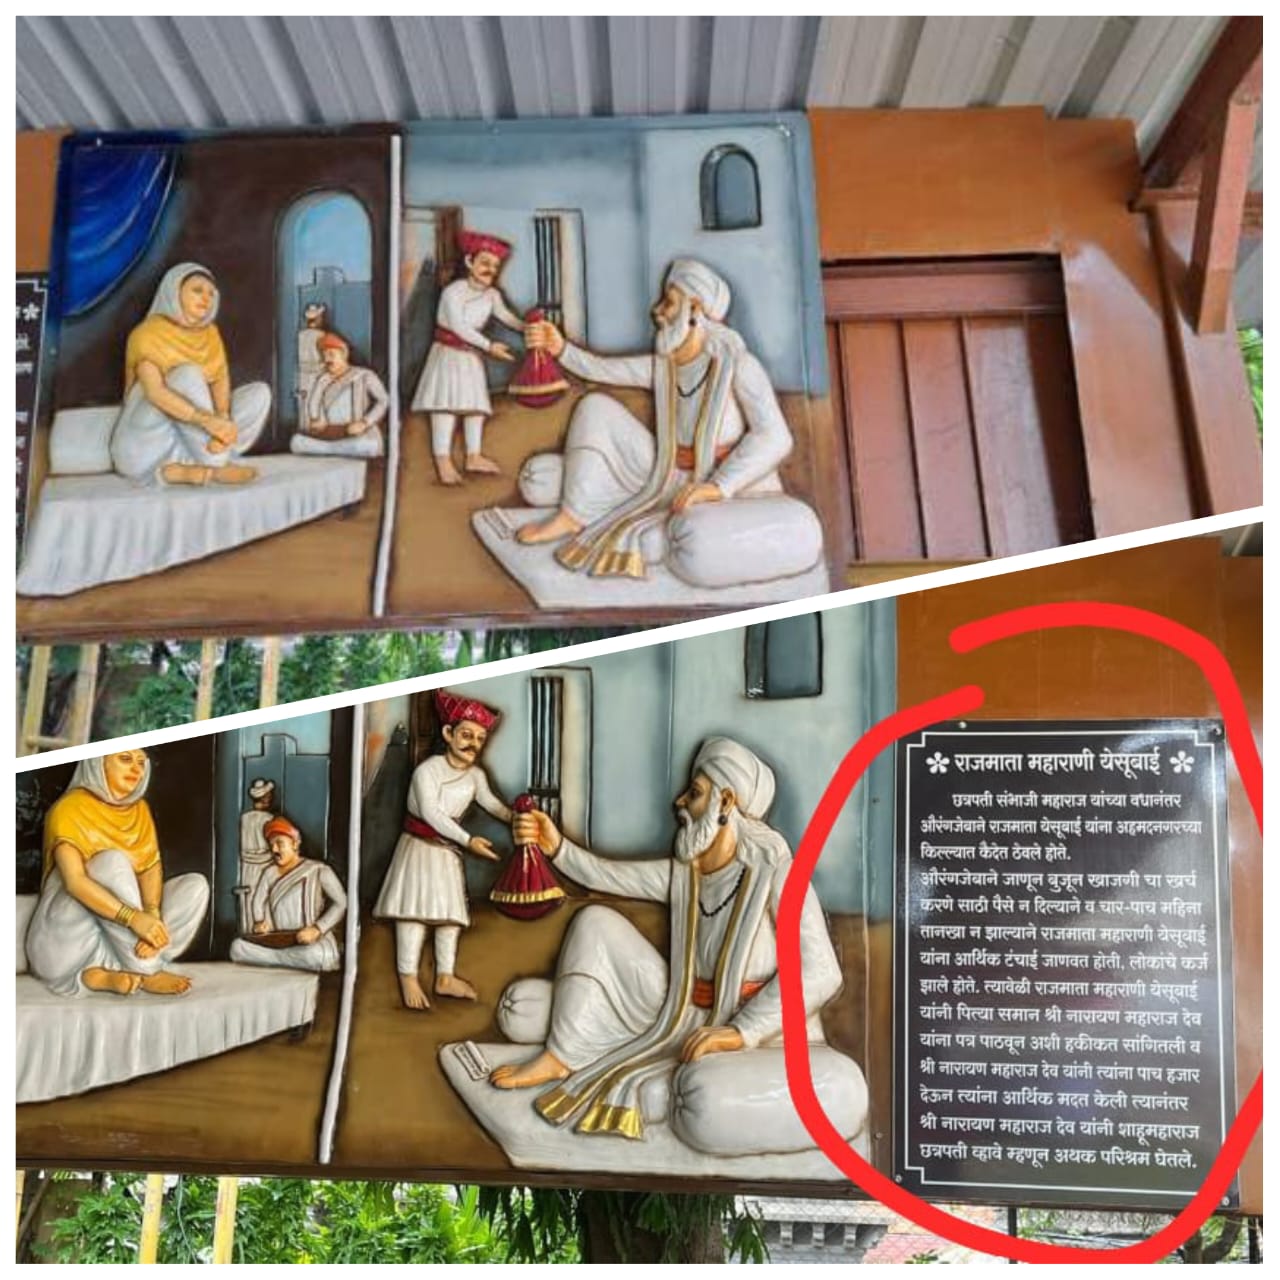 संभाजी ब्रिगेडचा दणका : मोरया गोसावी मंदिर व्यवस्थापनाने 'तो' फलक हटविला